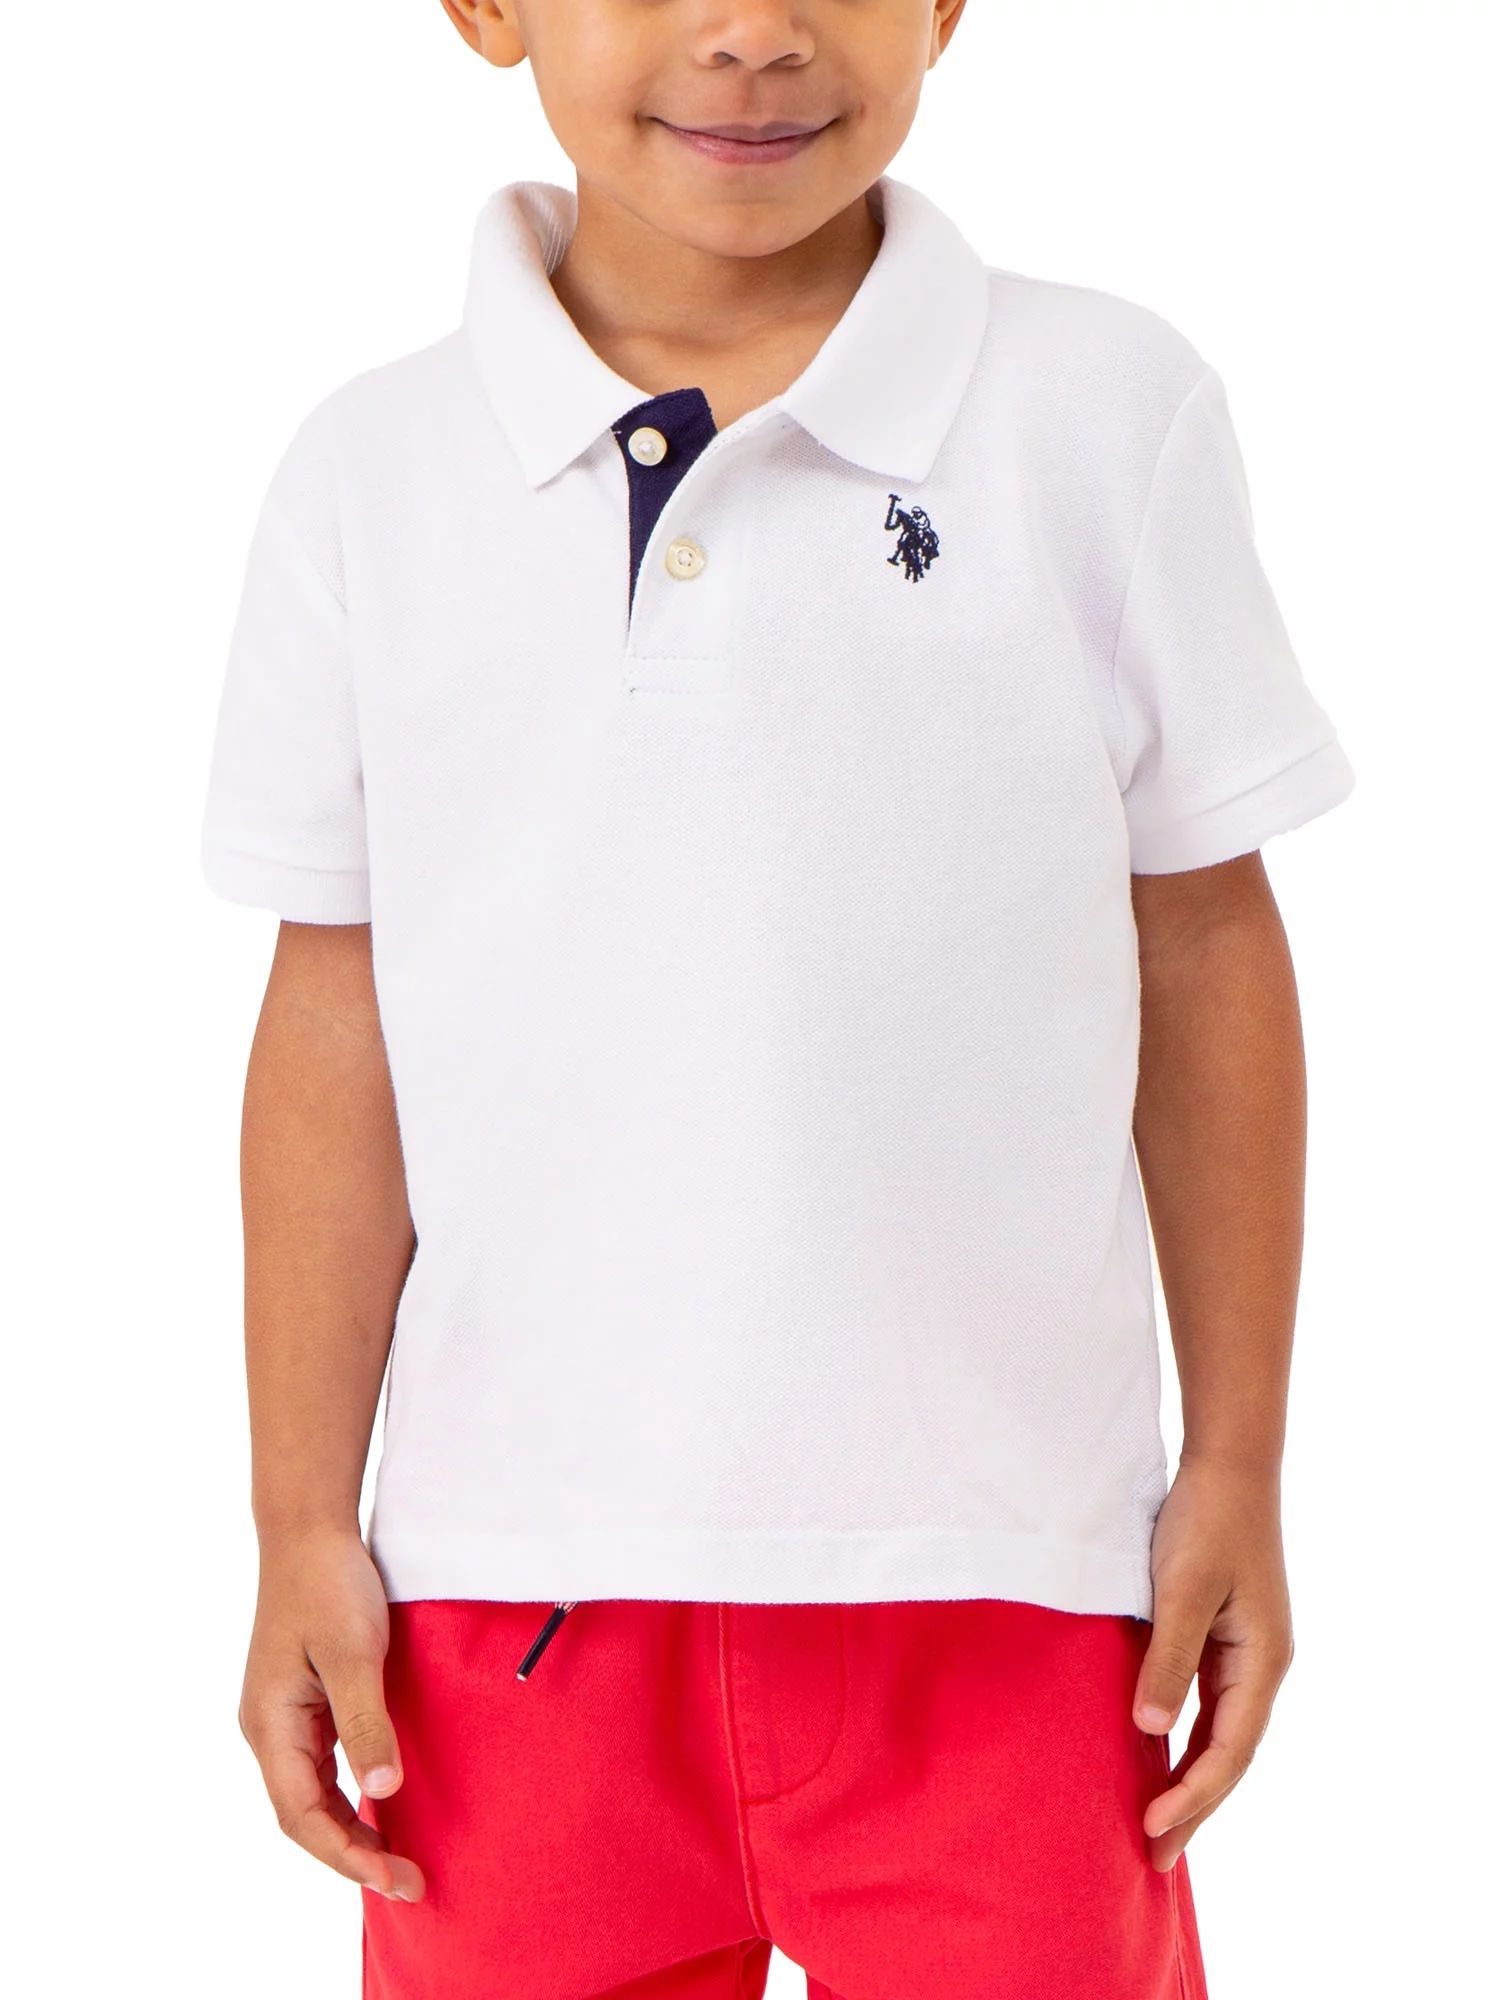 U.S. Polo Assn. Toddler Boys Pique Polo T-Shirt, Sizes 2T-5T | Walmart (US)